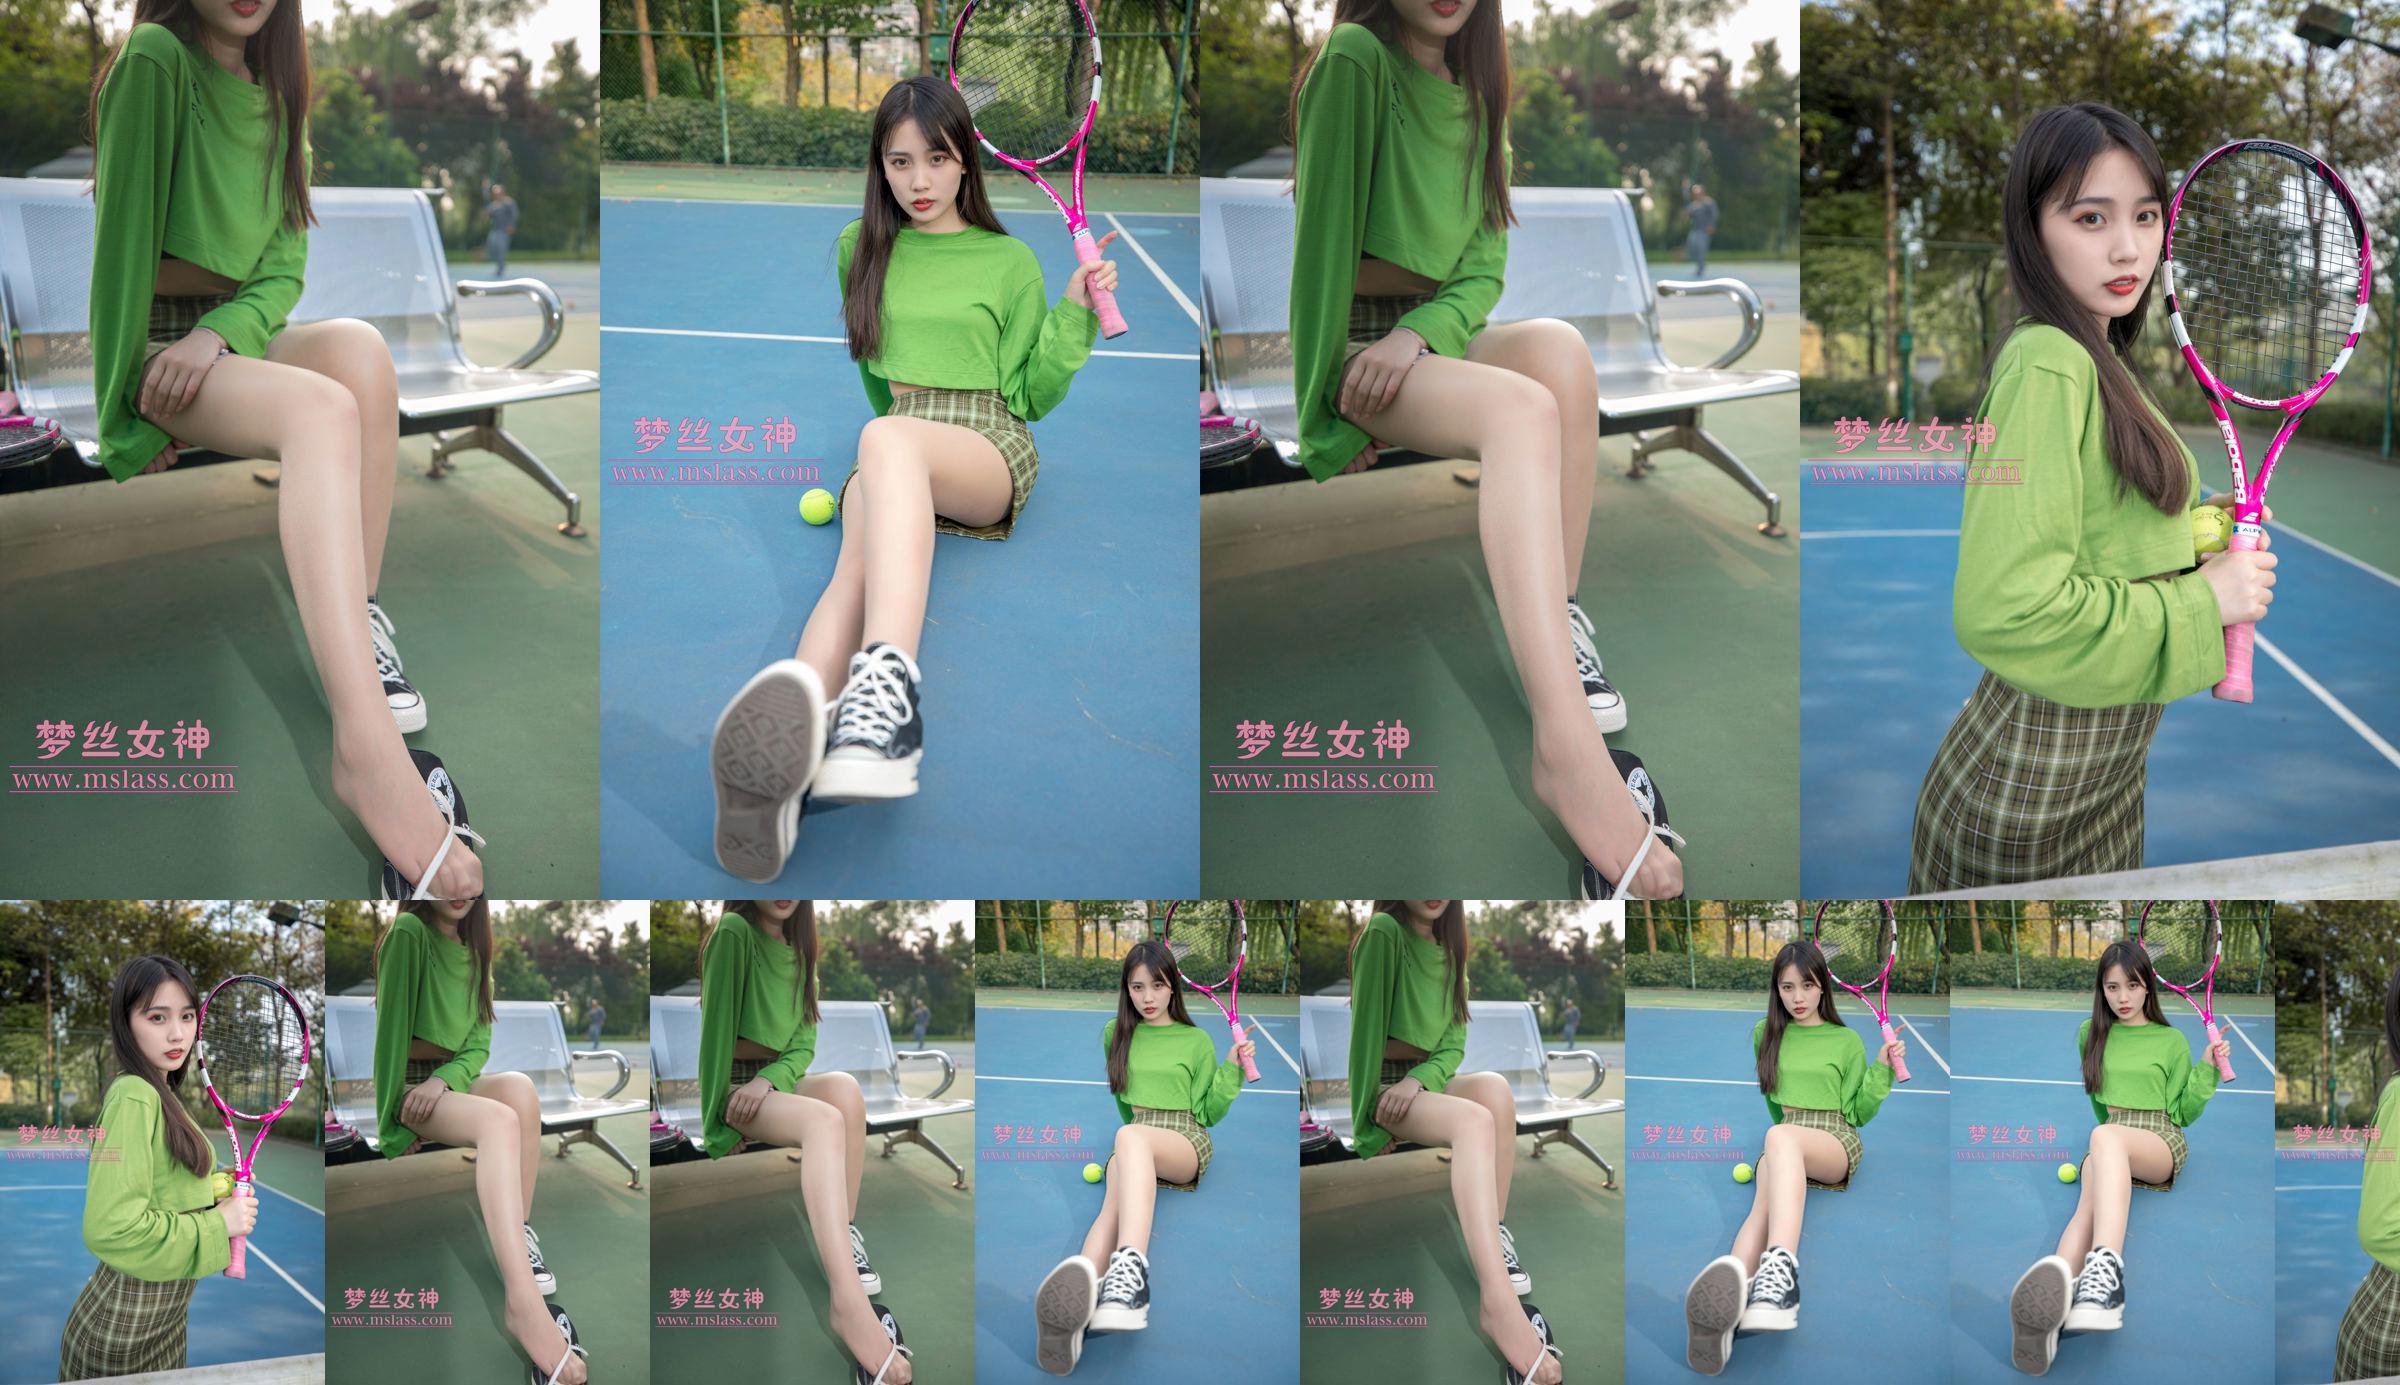 [Goddess of Dreams MSLASS] Xiang Xuan Tennis Girl No.481f2e Page 1